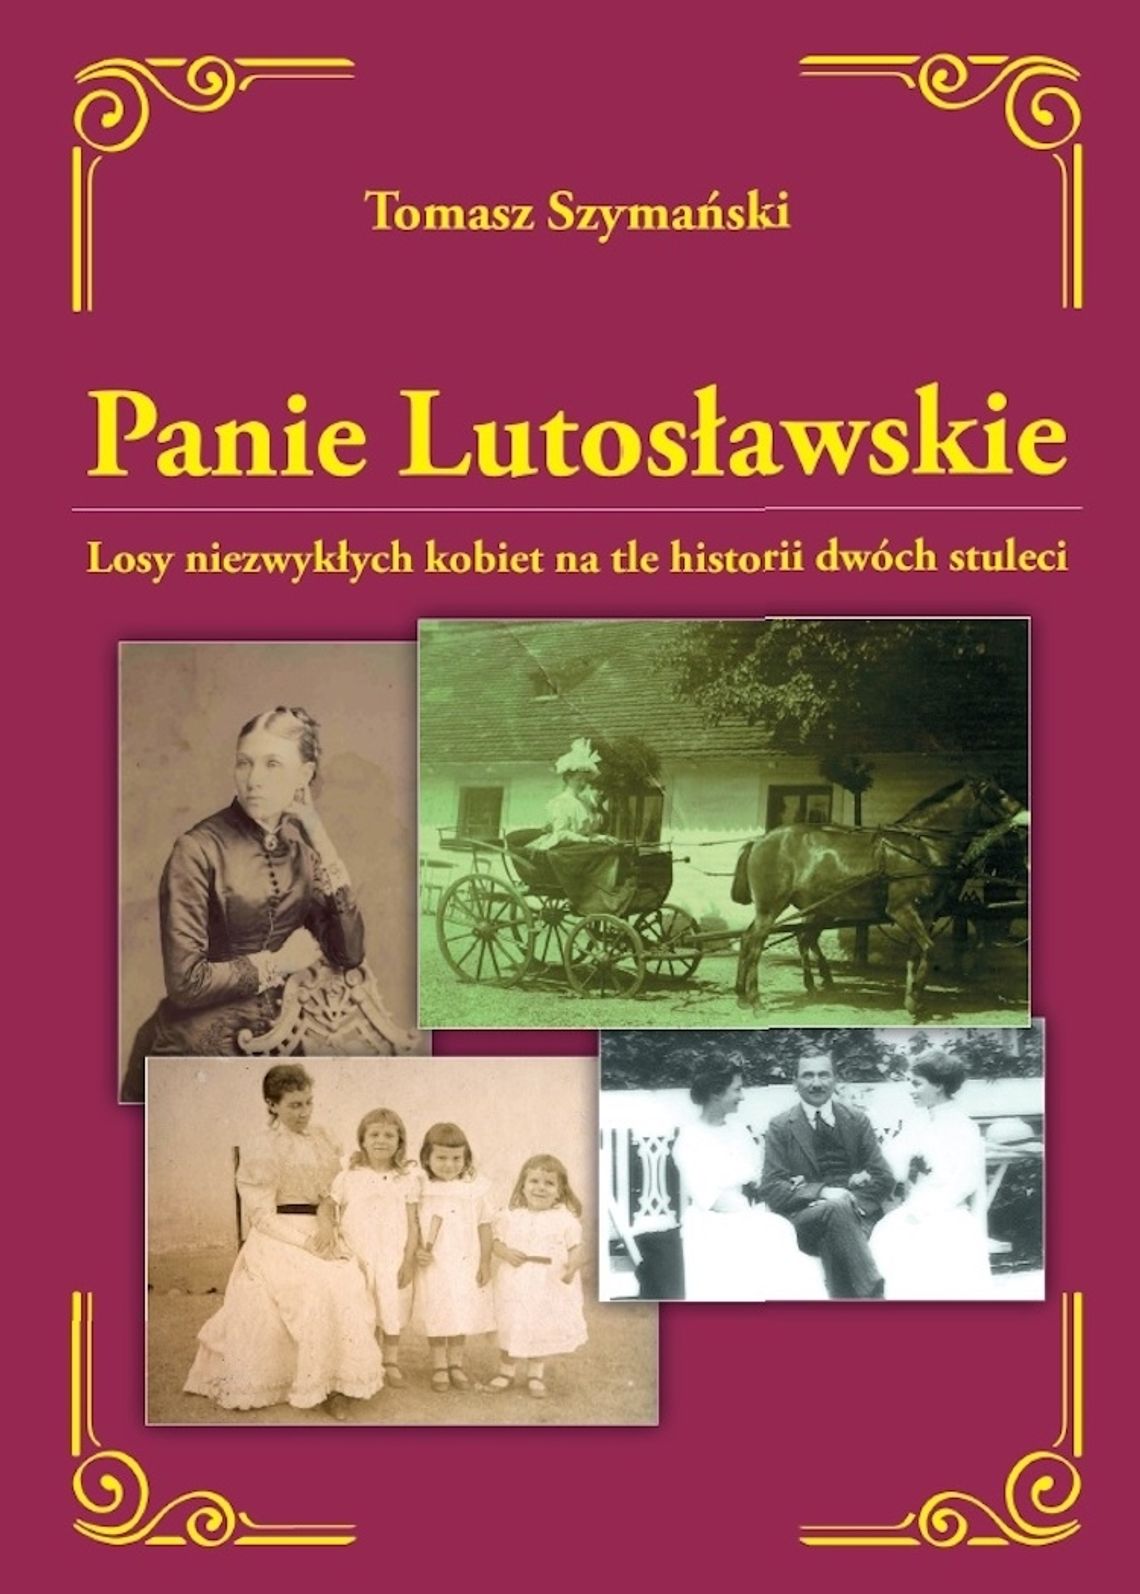 Nowość wydawnicza Muzeum w Drozdowie – książka „Panie Lutosławskie”